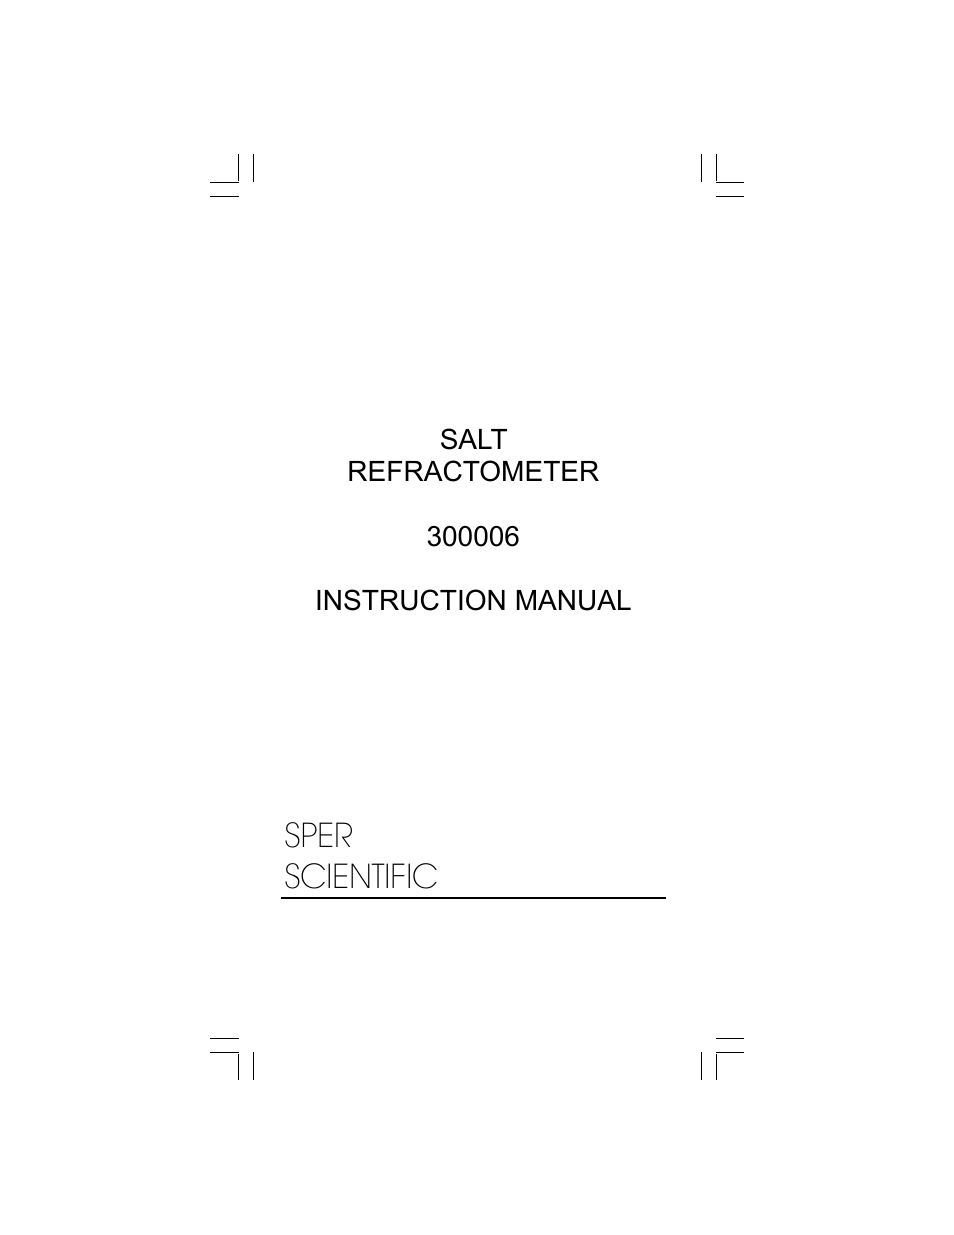 300006 Refractometer - Salt